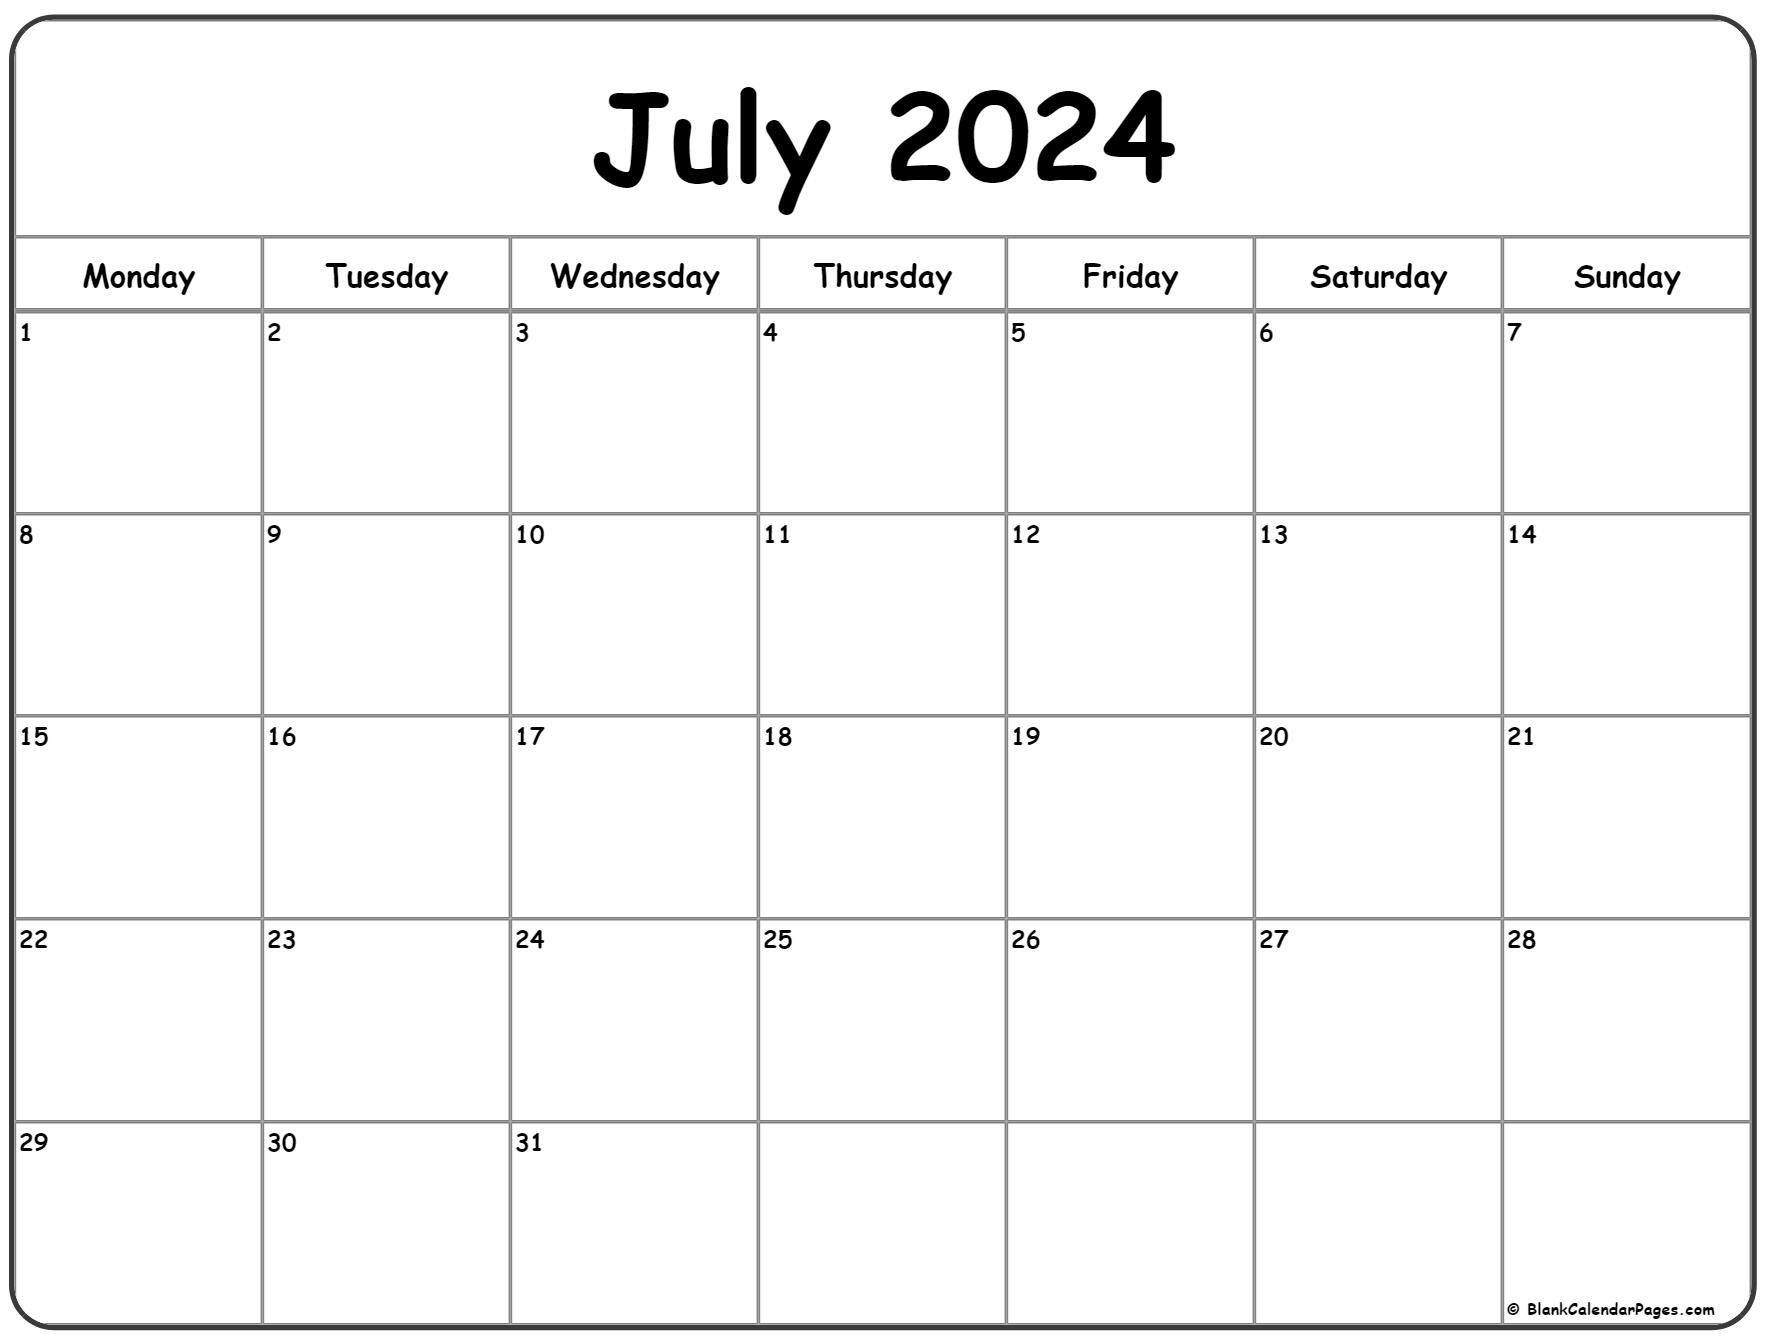 July 2023 Monday calendar. Monday to Sunday